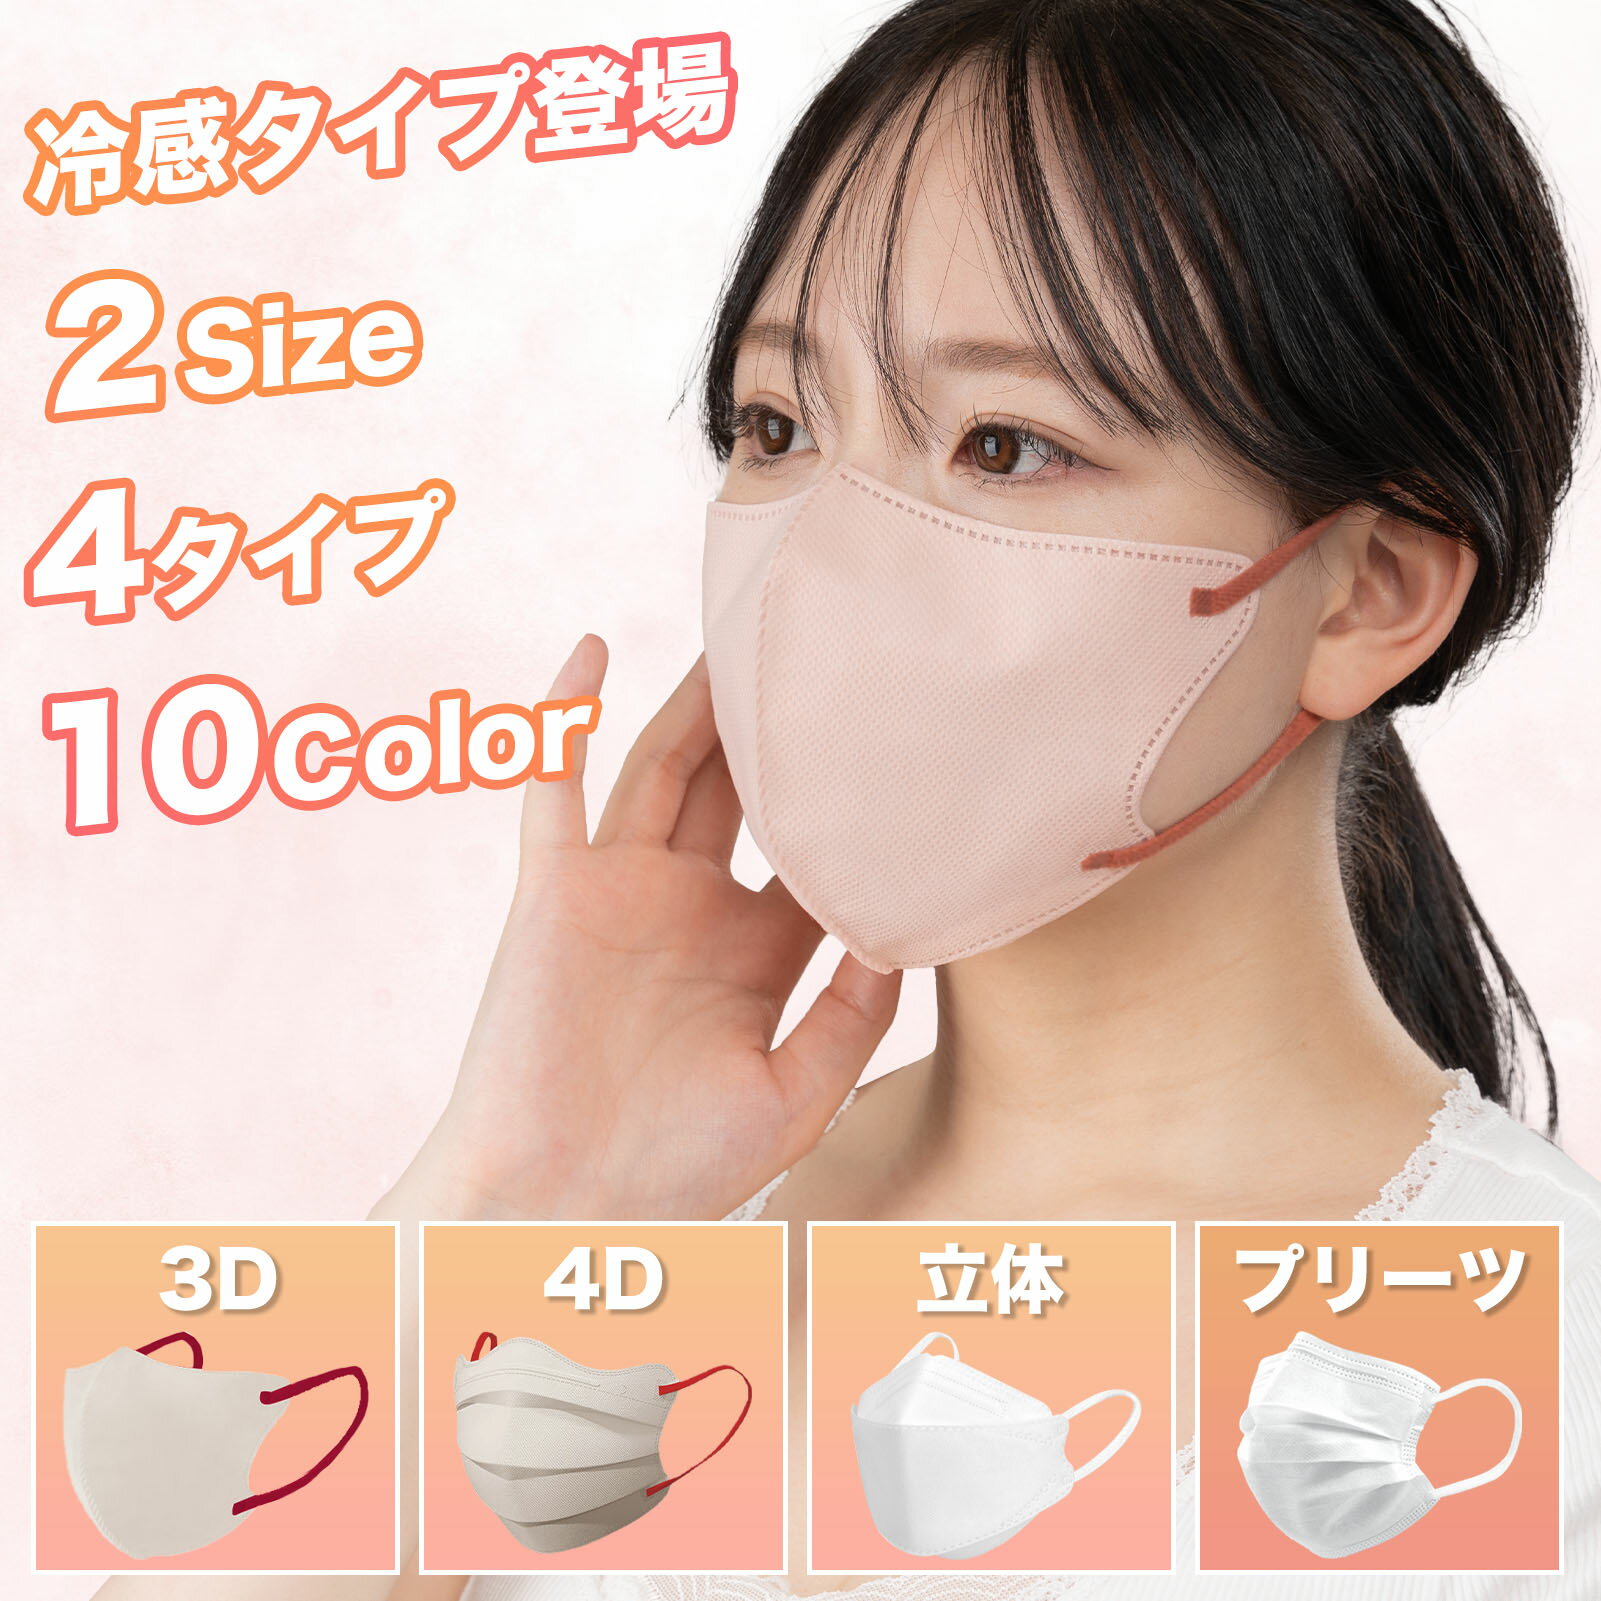 マスク 不織布 3Dマスク 日本製 冷感マスク 4Dマスク 